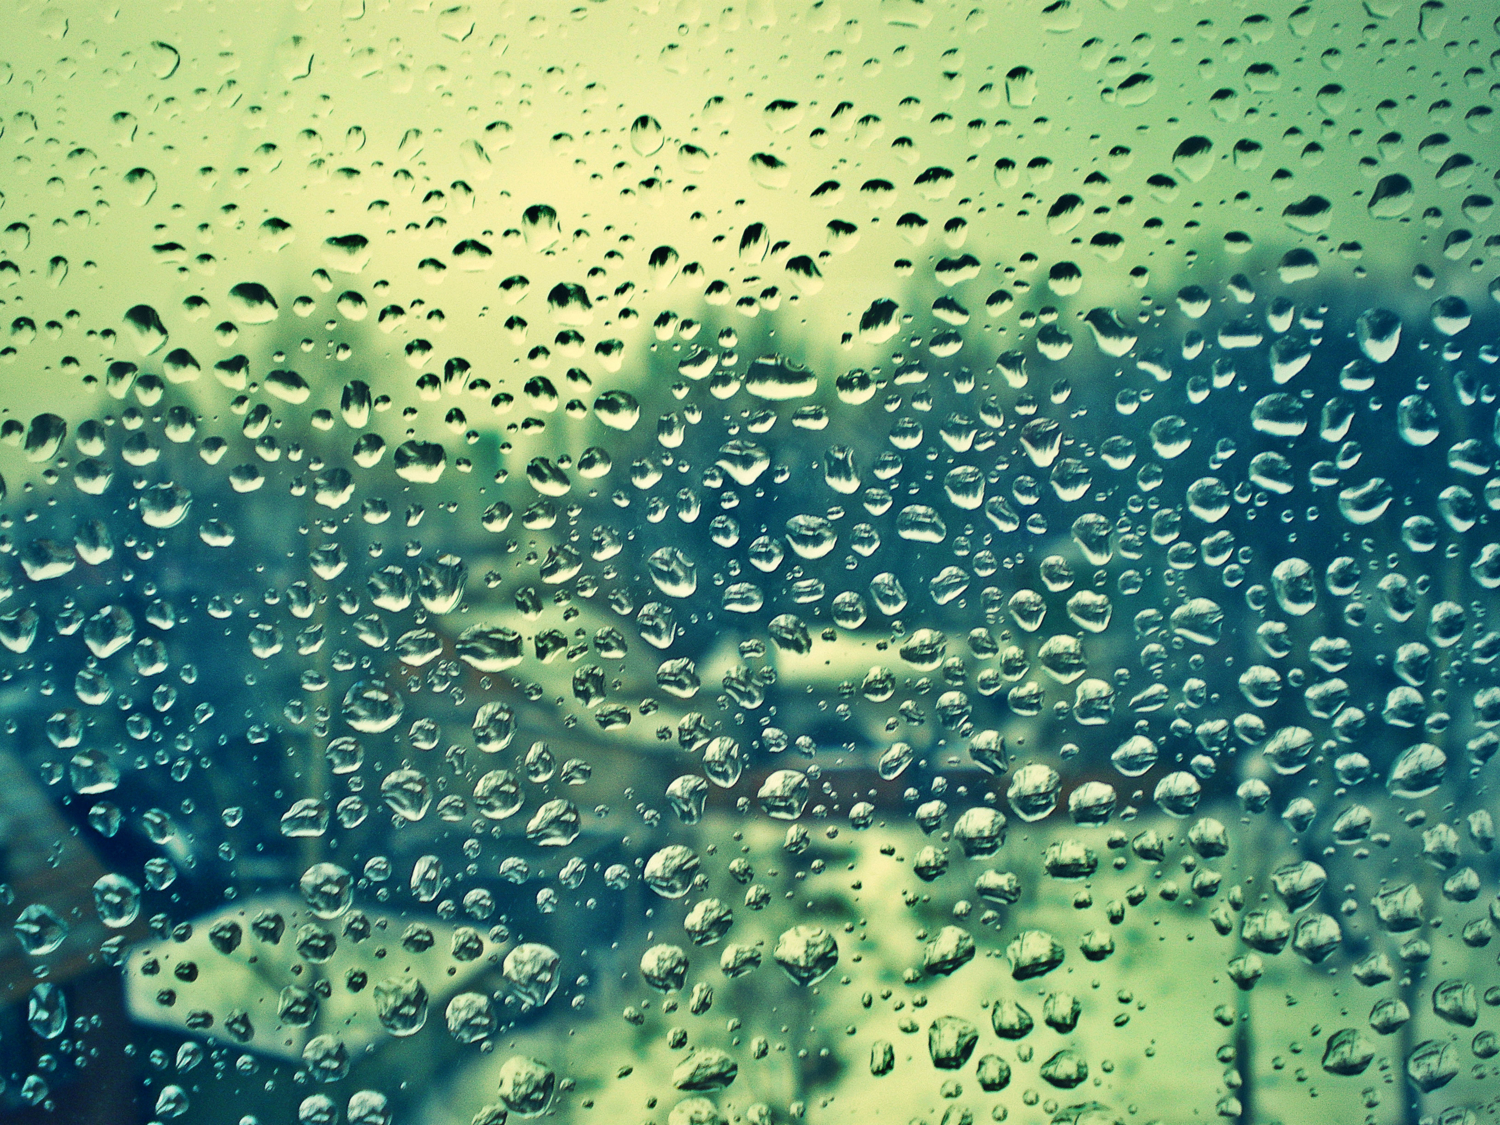 Следы дождя на стекле